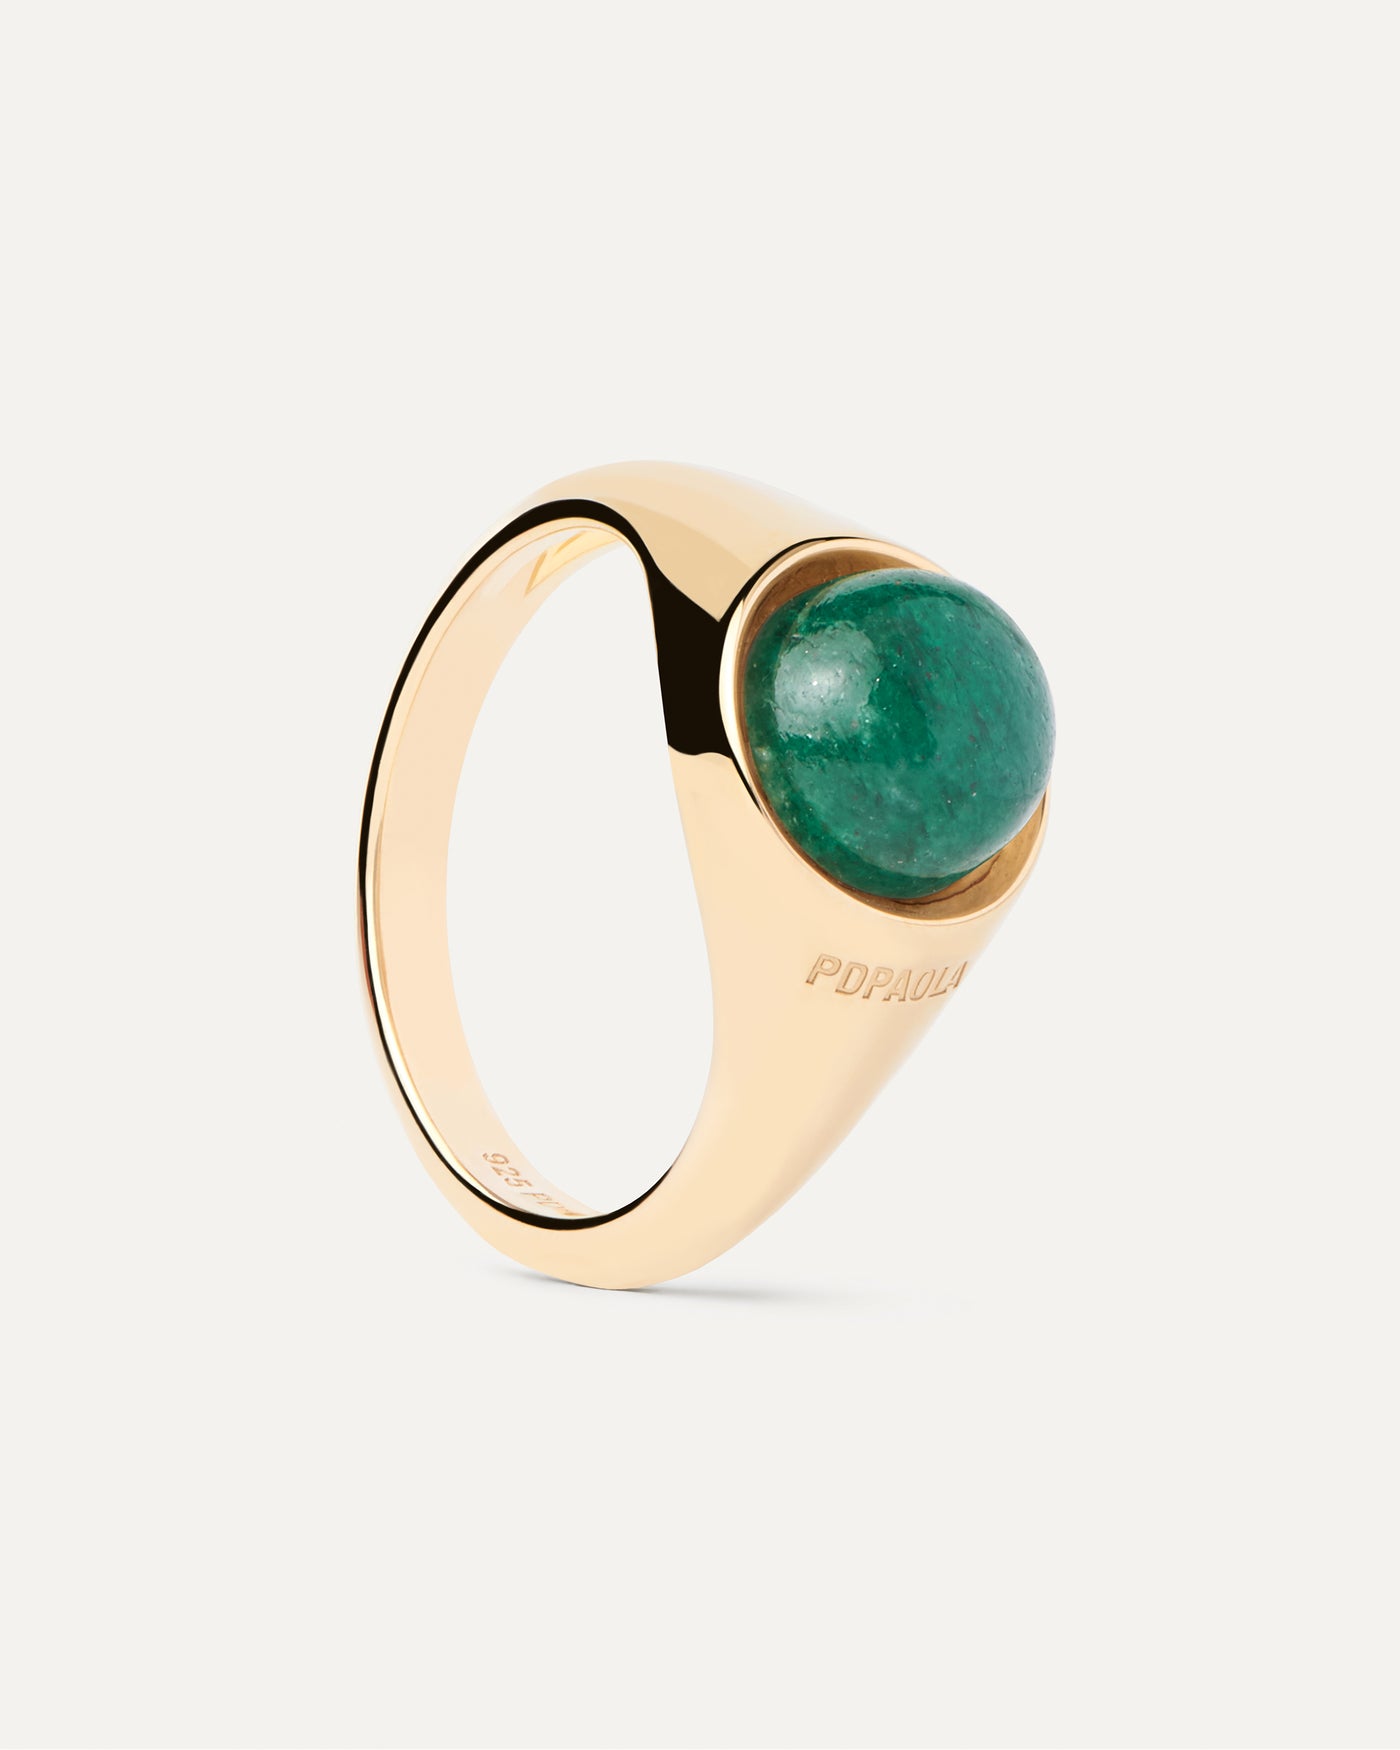 Grüner Aventurin Moon Ring. Halbkugelring vergoldet mit ovalem grüner Edelstein oben drauf. Erhalten Sie die neuesten Produkte von PDPAOLA. Geben Sie Ihre Bestellung sicher auf und erhalten Sie diesen Bestseller.